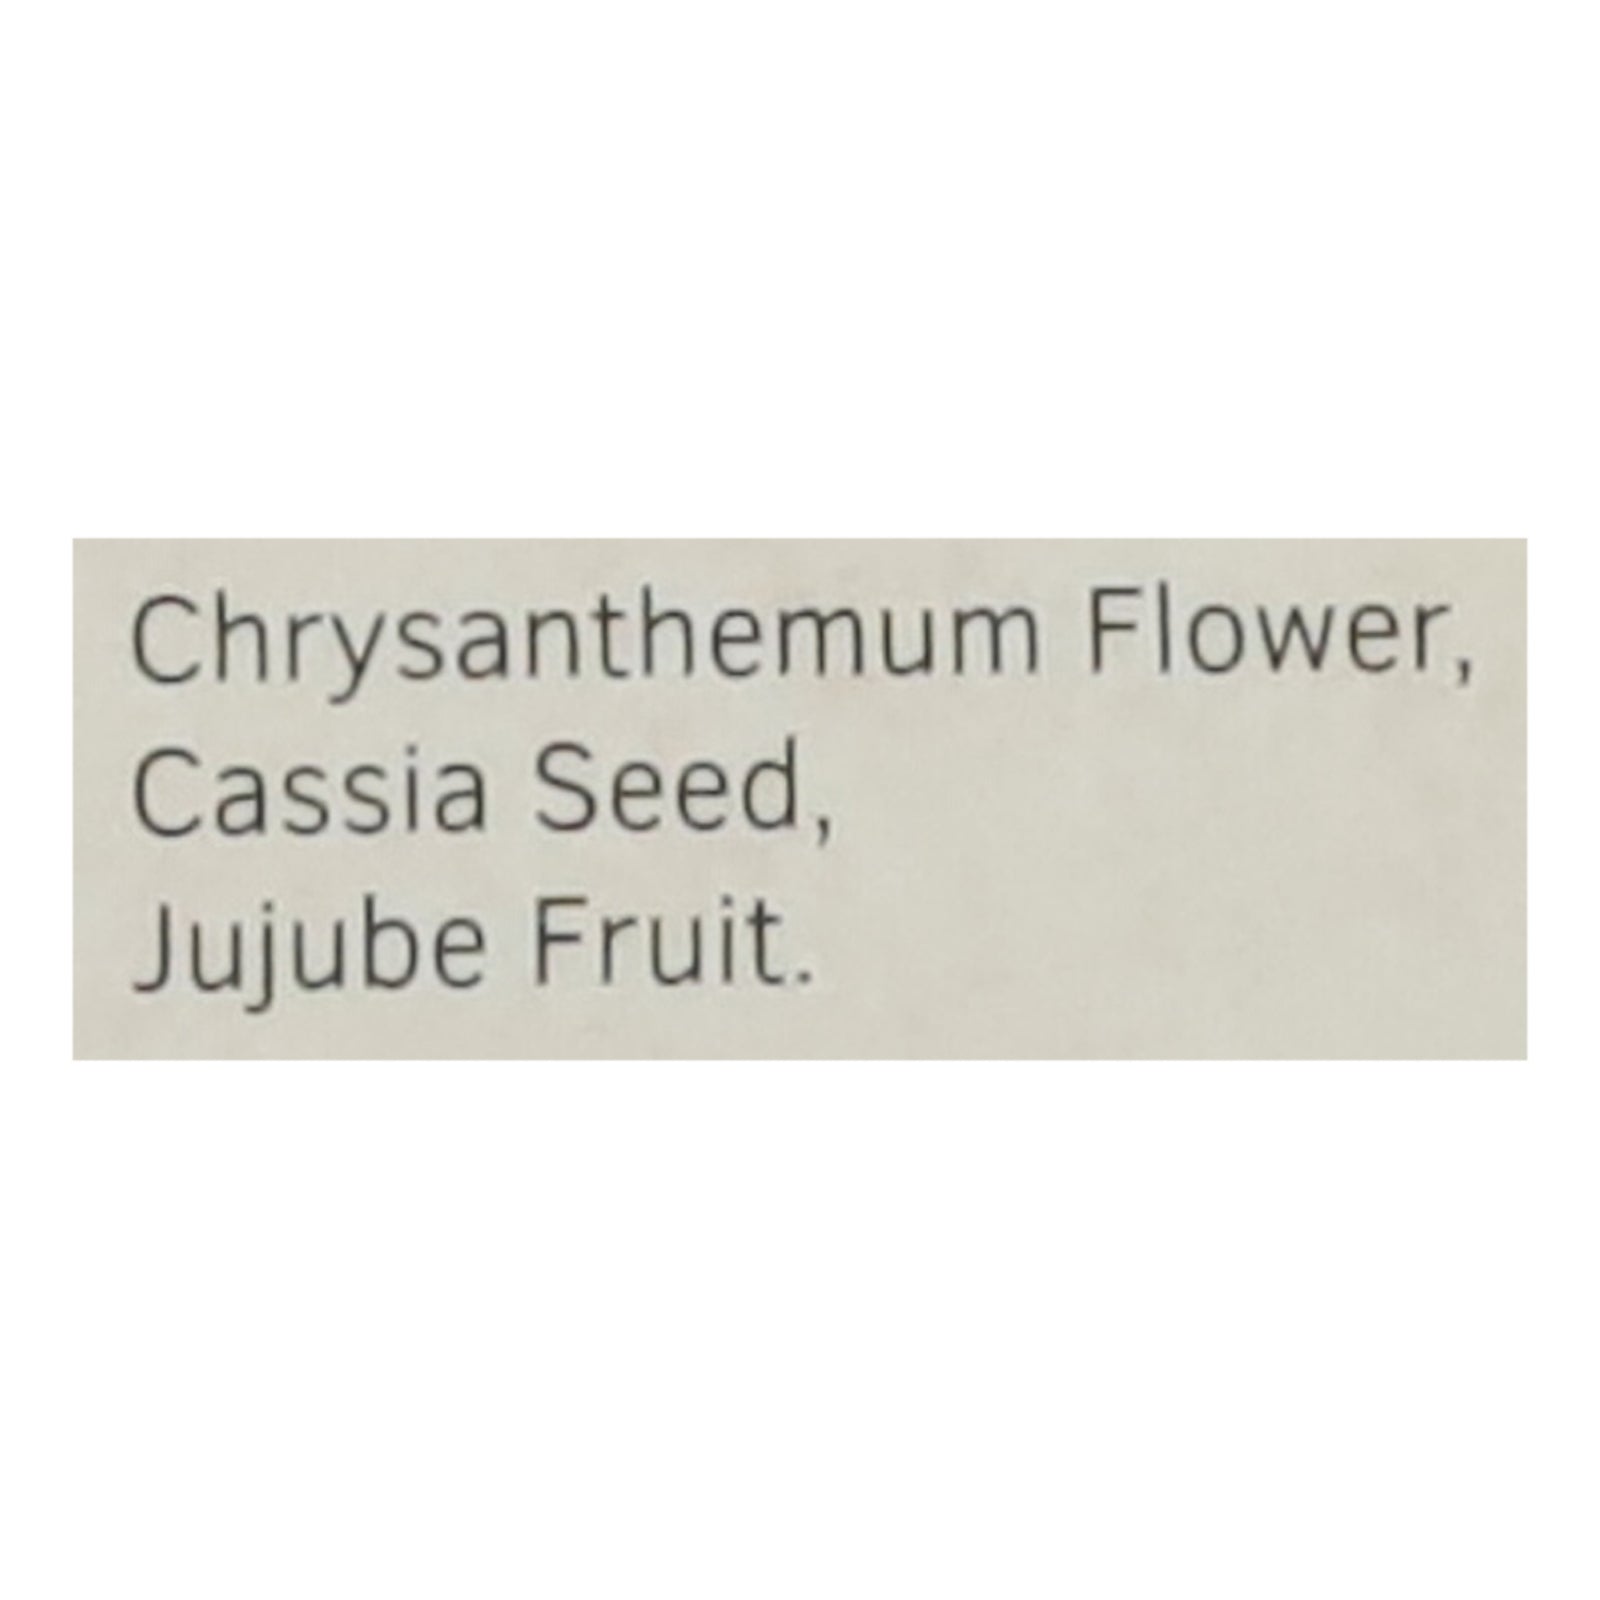 Health King Chrysanthemum Vascuflow Herb Tea - 20 Tea Bags